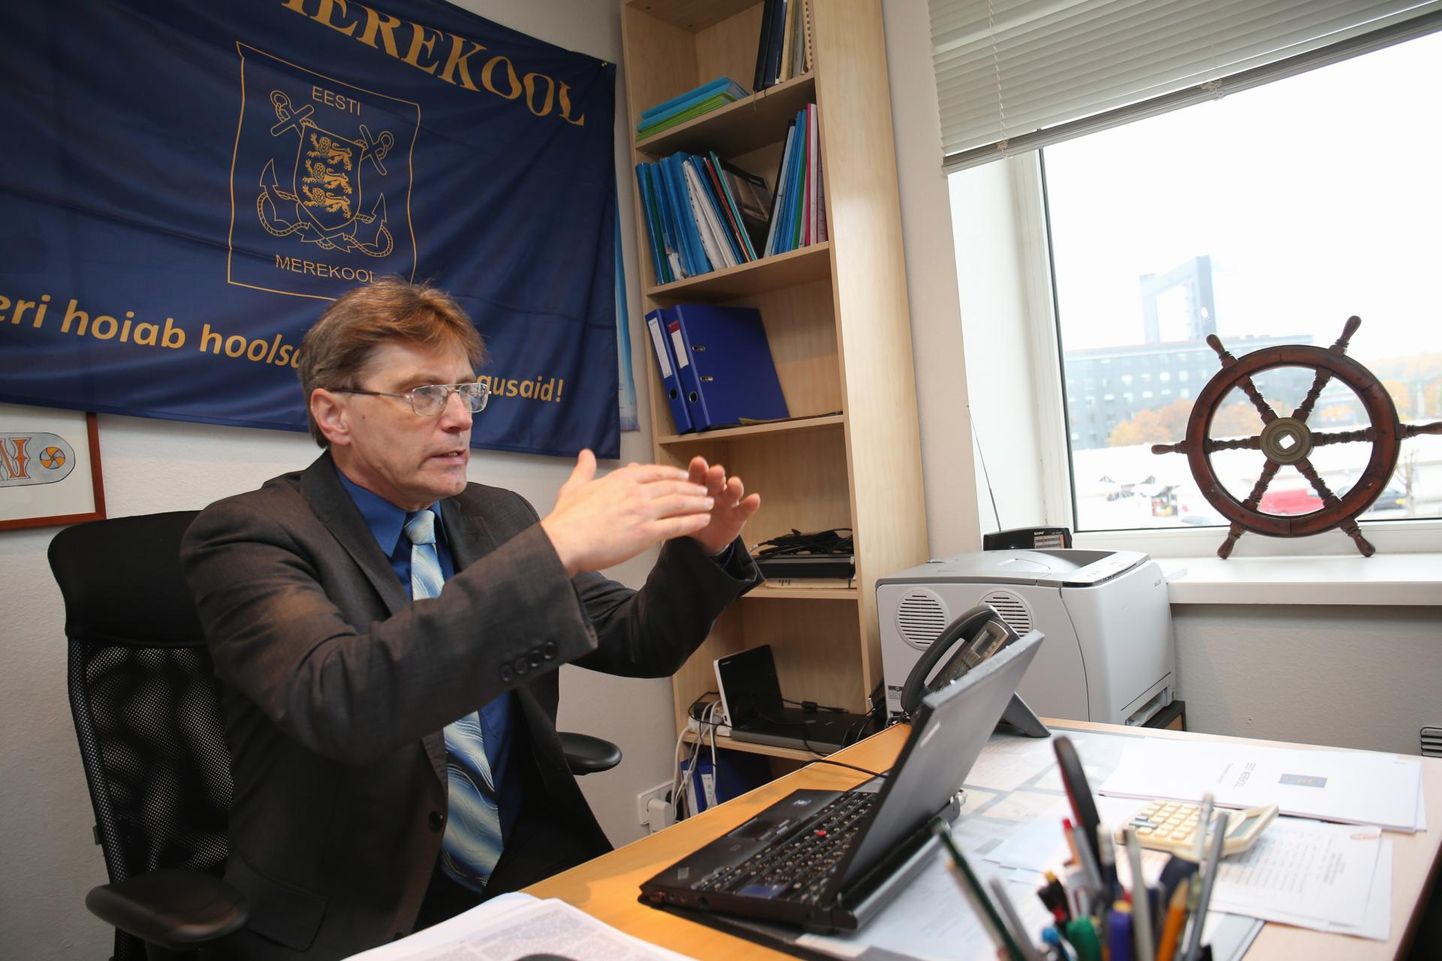 Eesti merekooli Tartu filiaali juht Indrek Särg on ametis selle aasta augustist.